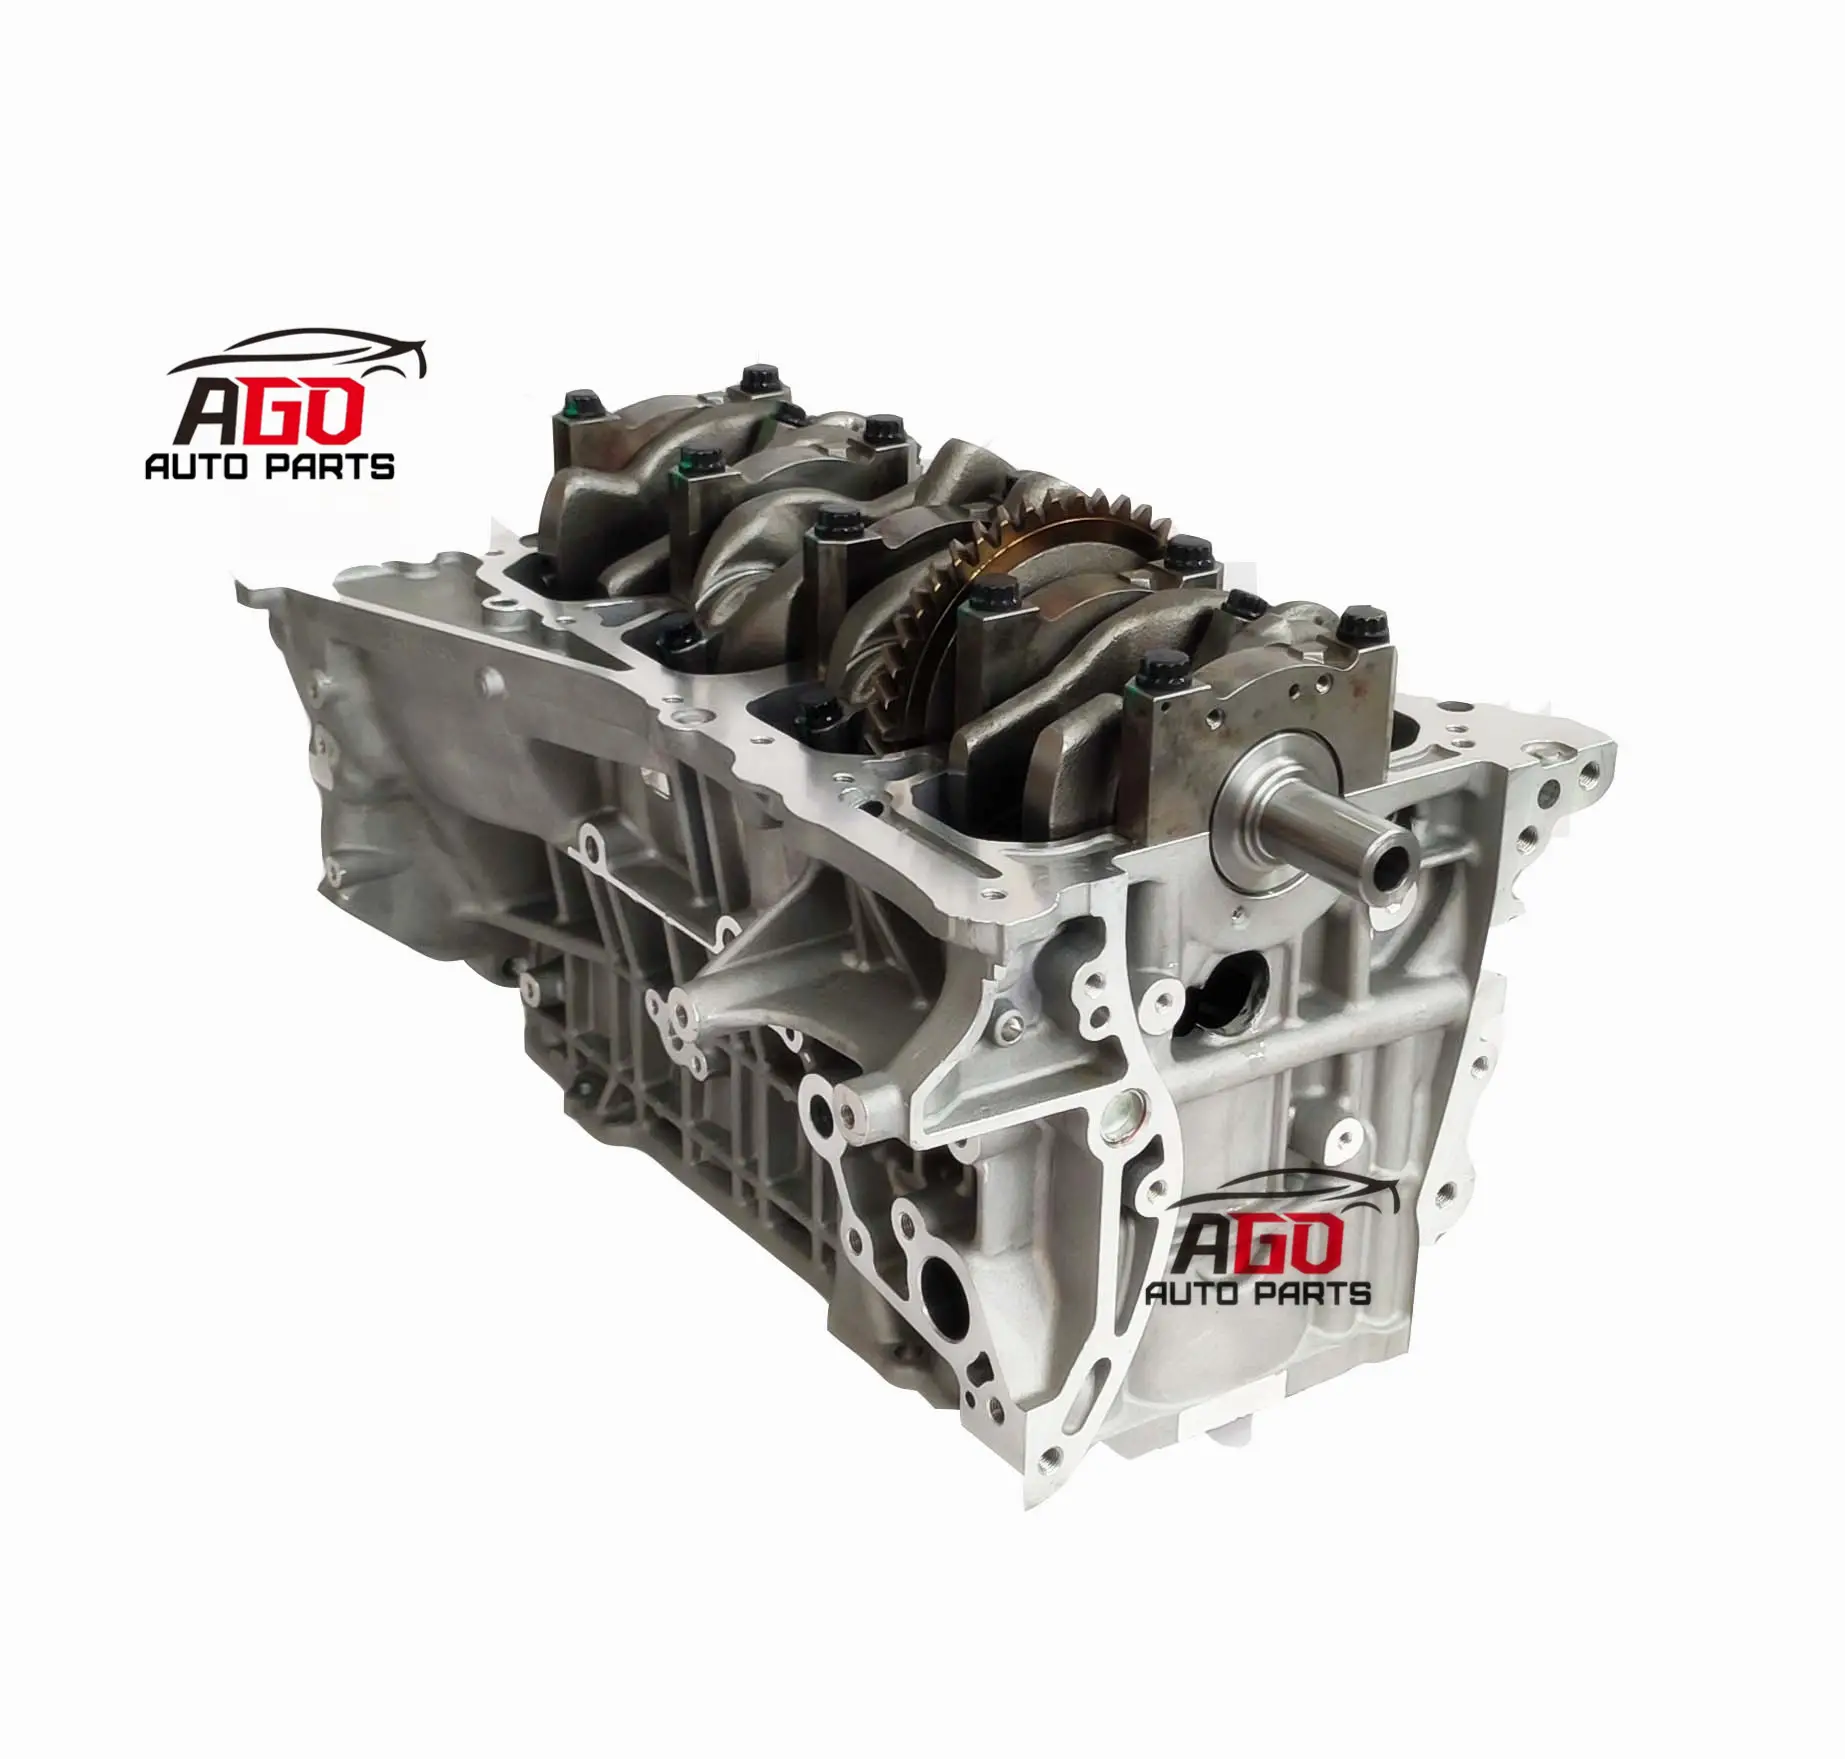 Nuovissimo blocco corto motore 2AZ 2.4L per motore auto TOYOTA CAMRY ALPHARD RAV4